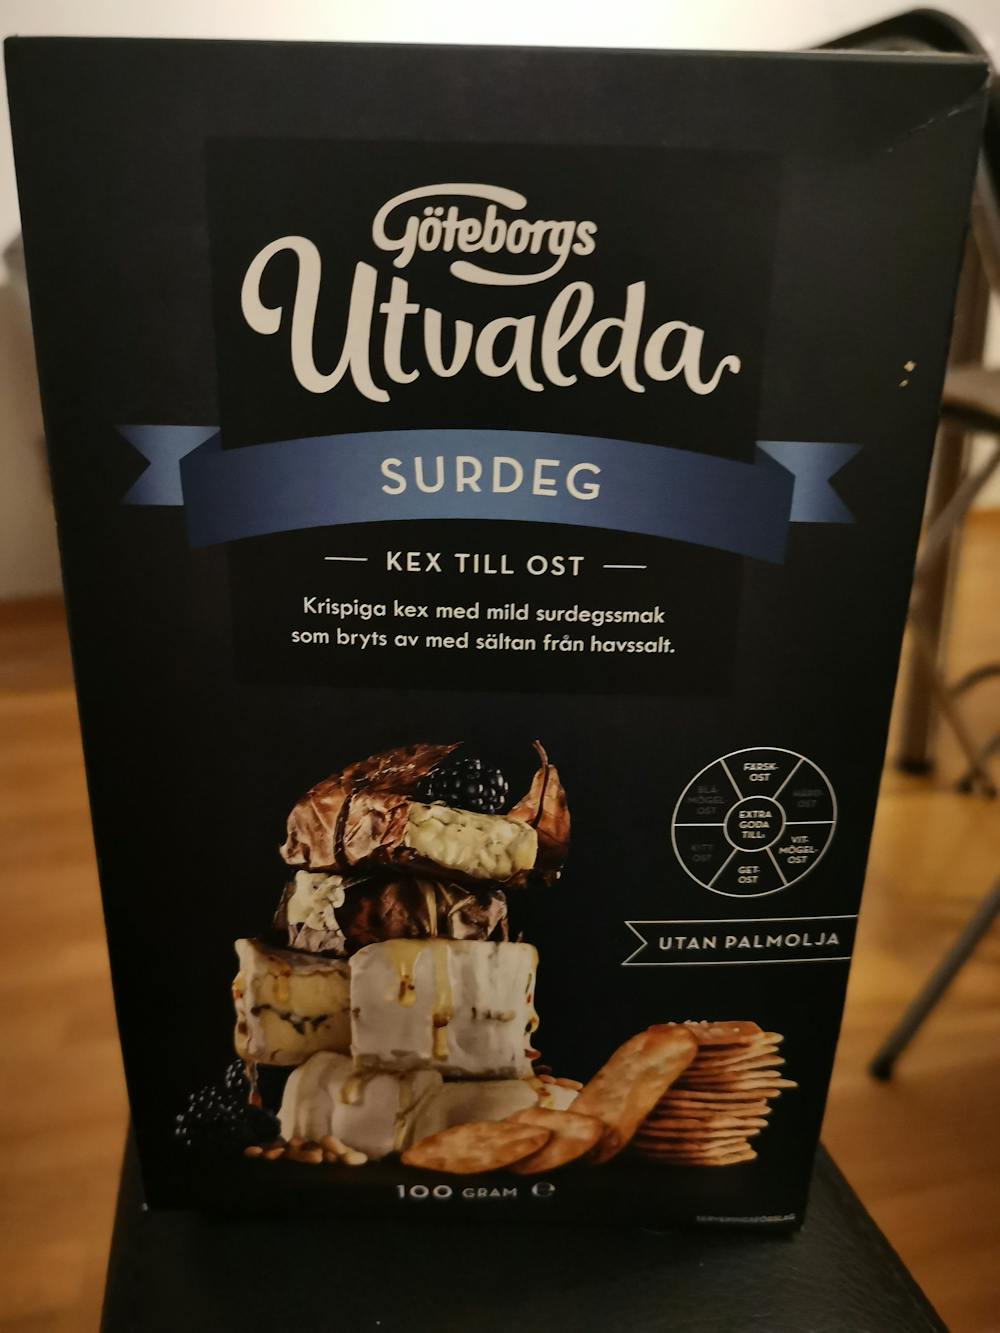 Kex till ost surdeg, Göteborgs Utvalda